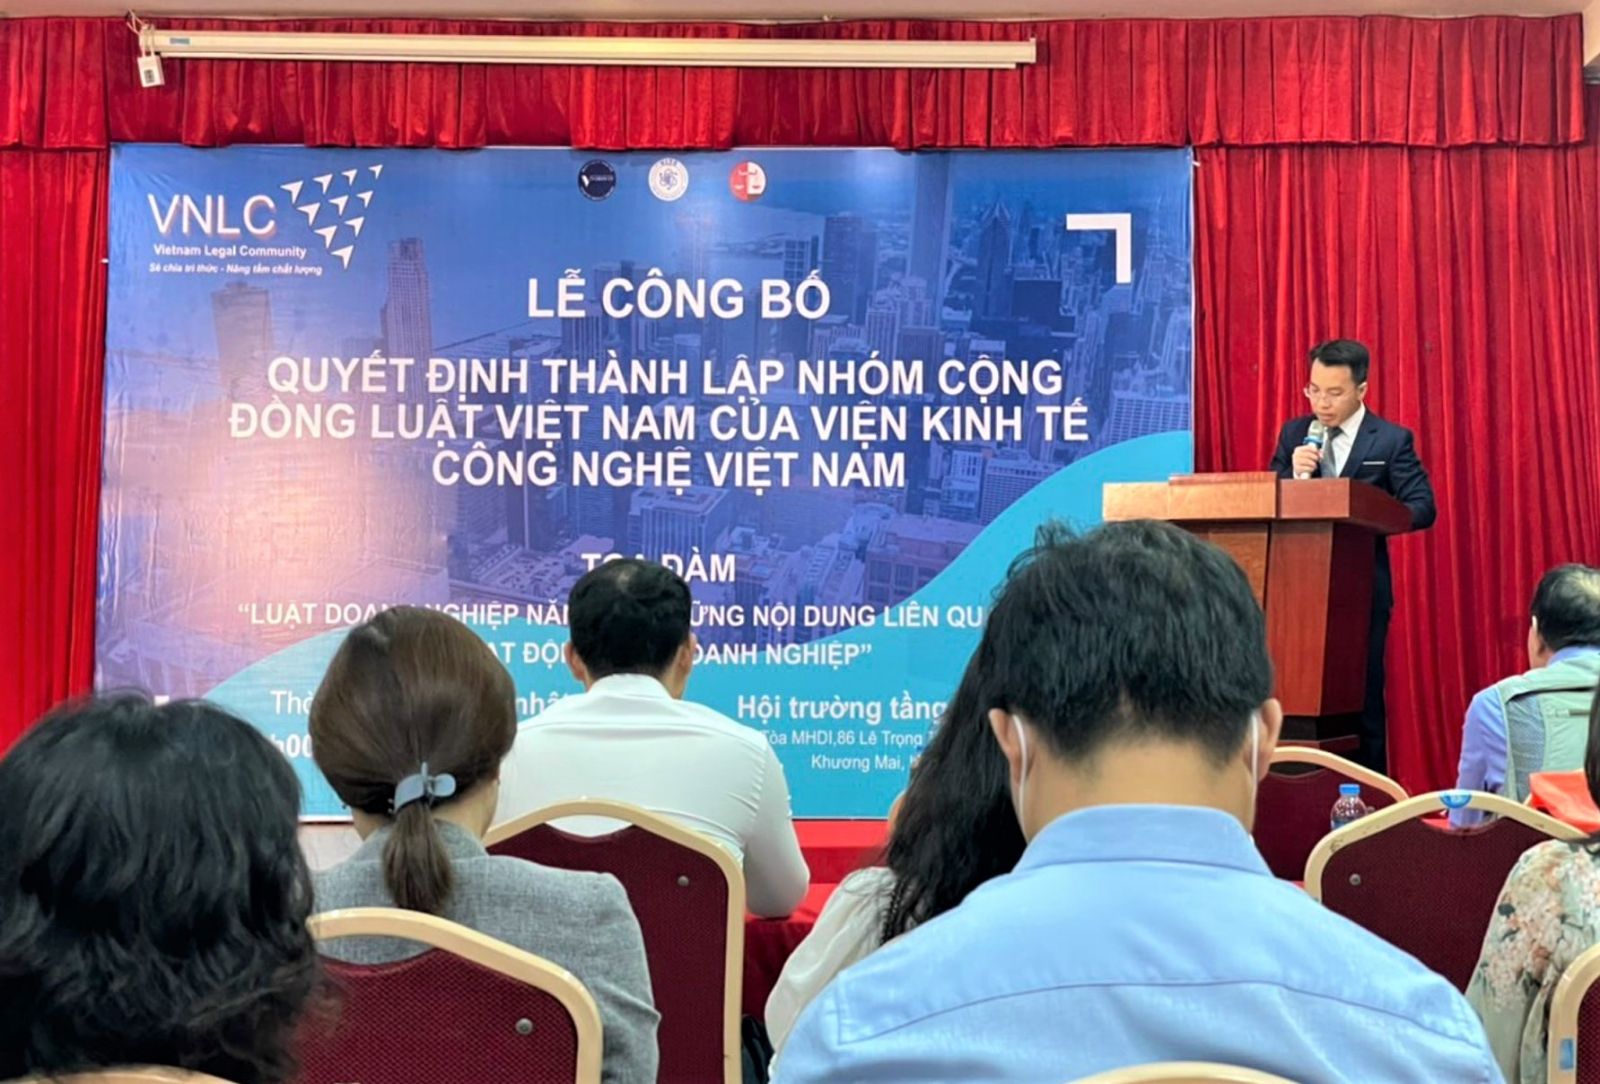 Thành Lập nhóm cộng đồng luật Việt Nam